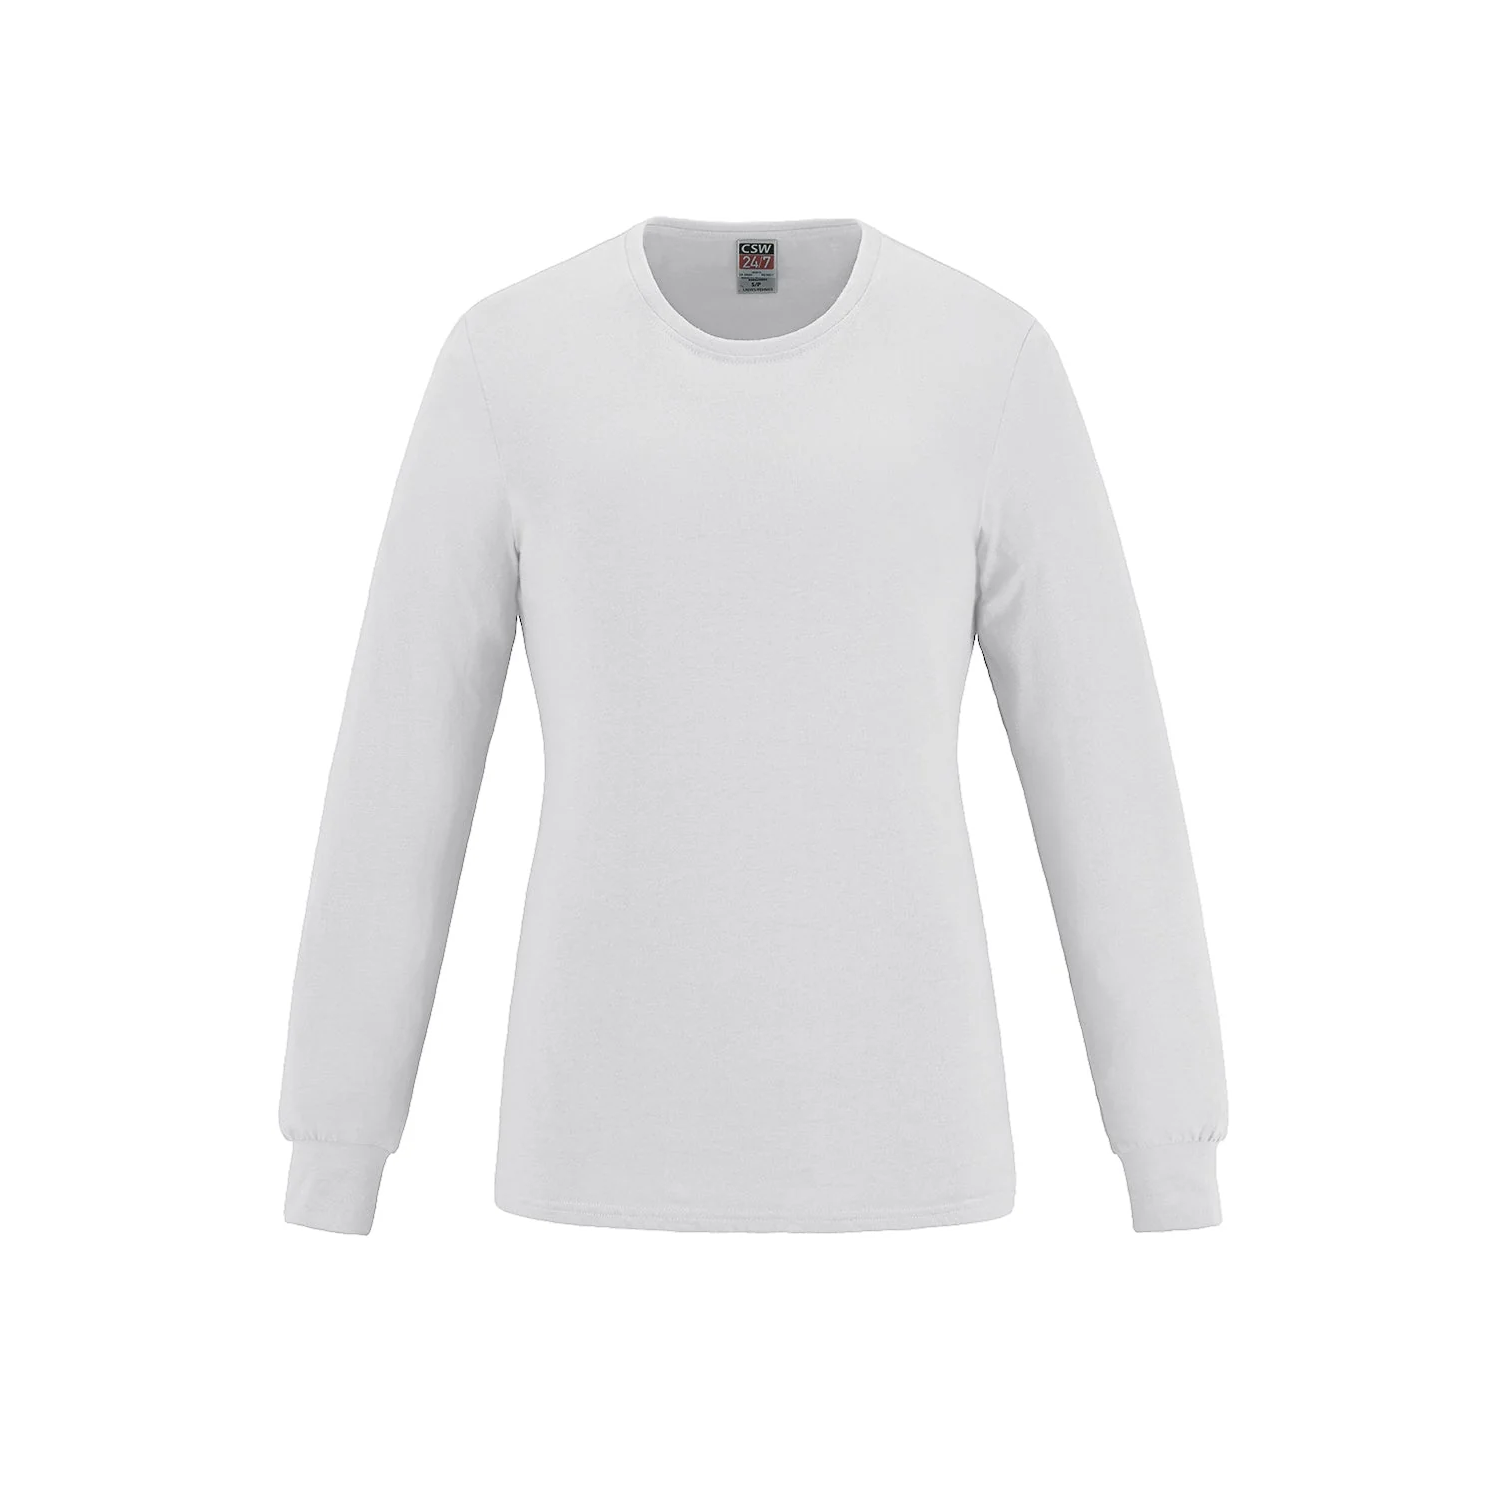 S05616 - Breeze - Ladies Long Sleeve Crewneck Ring Spun Combed Cotton T-Shirt - promopig